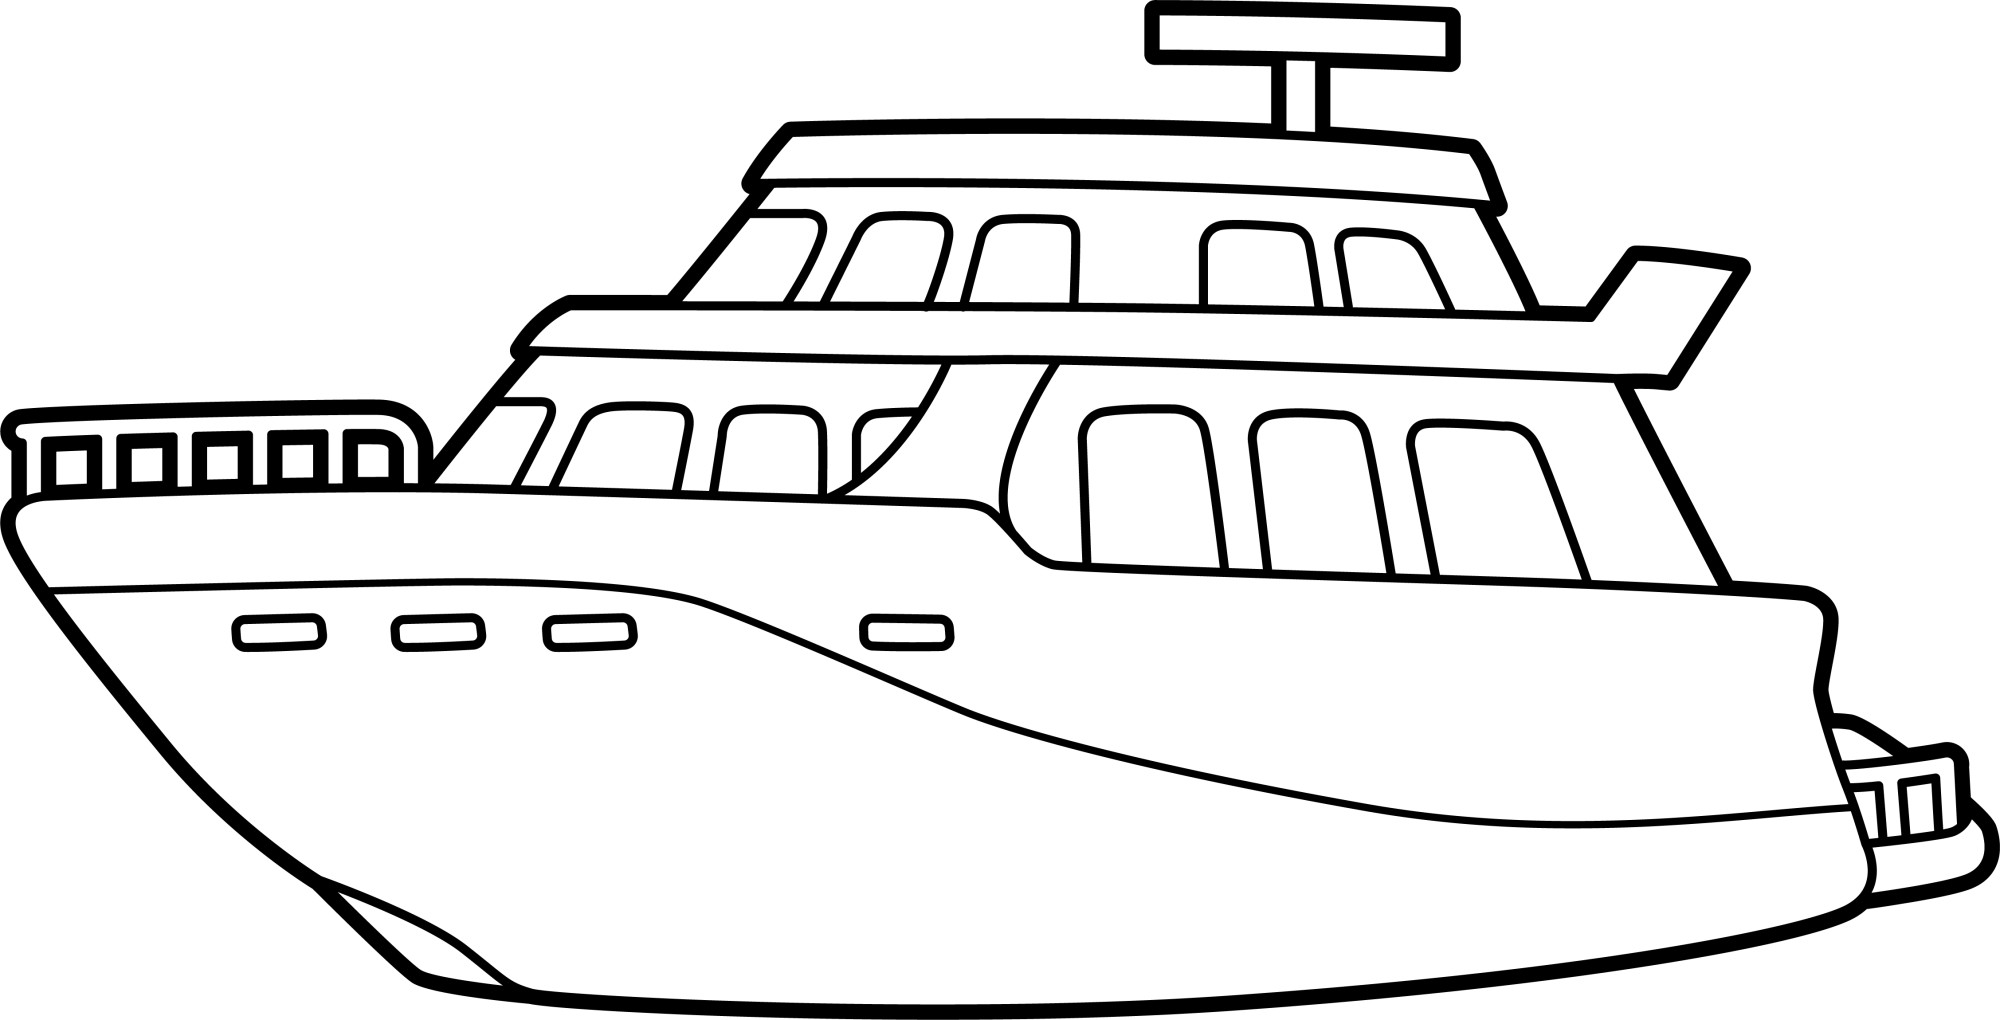 Раскраска для детей: корабль яхта